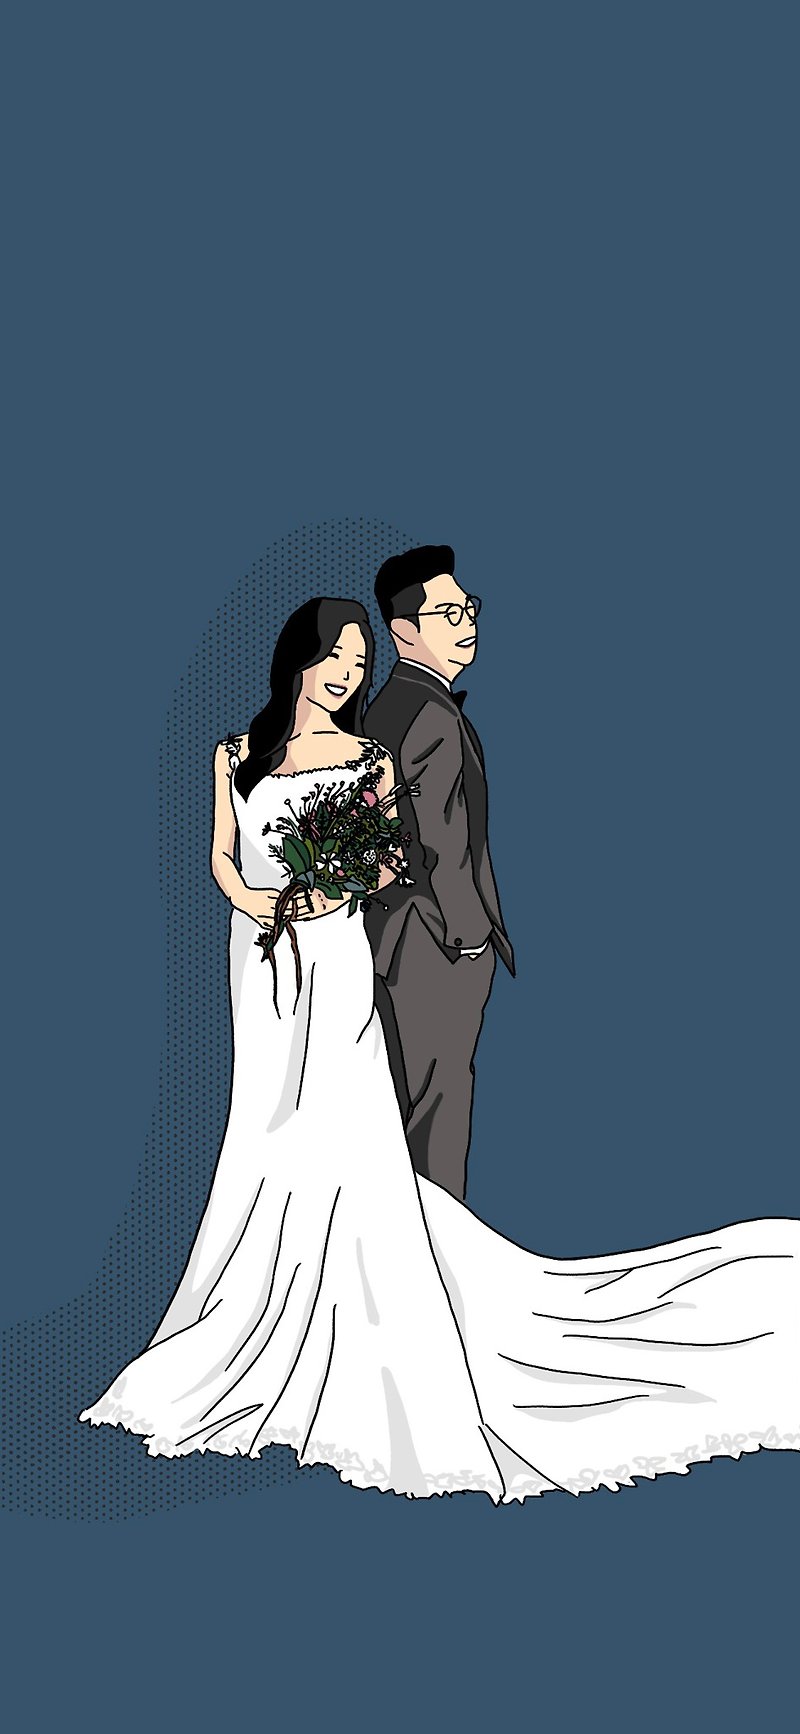 Yanhui電子ファイル電話壁紙電子招待状のような物語の結婚式を教えてください - 似顔絵・イラスト・挿絵 - その他の素材 